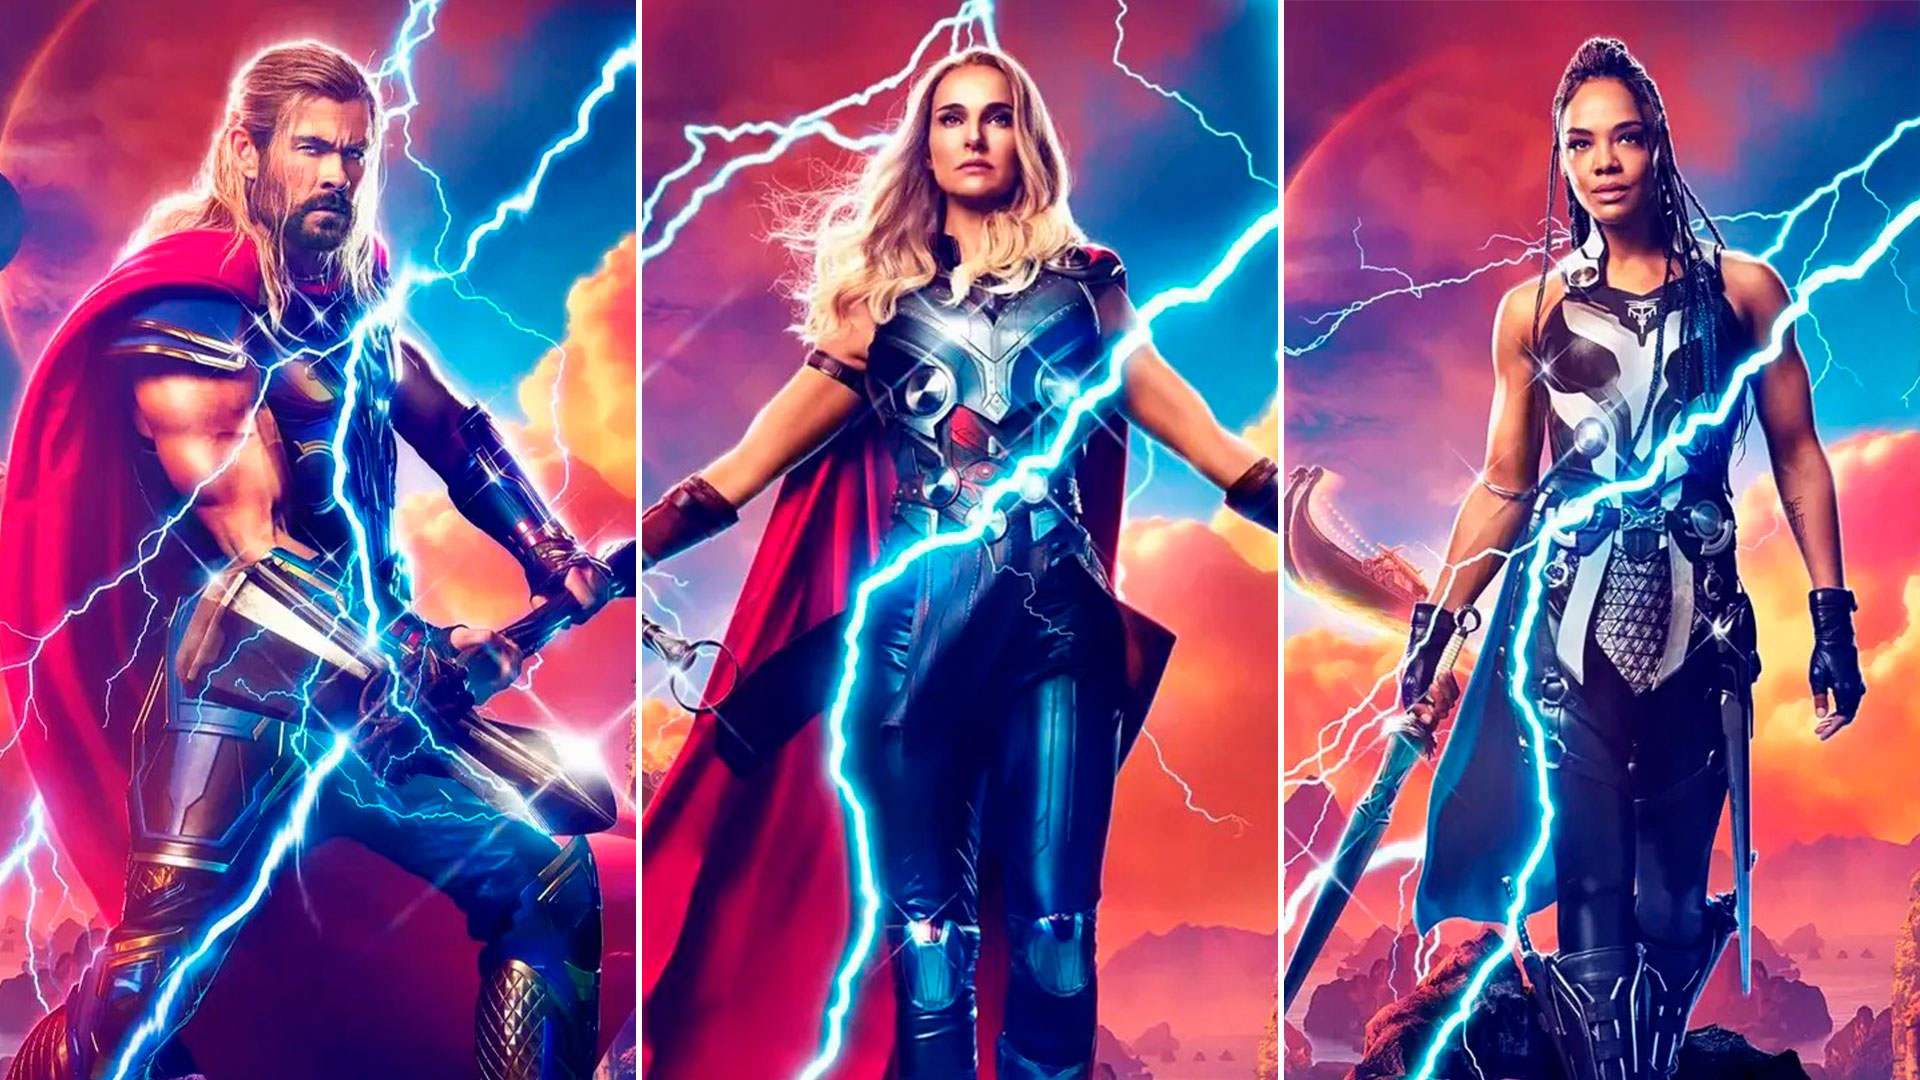 Thor Love and Thunder, actores y personajes: quién es quién en la